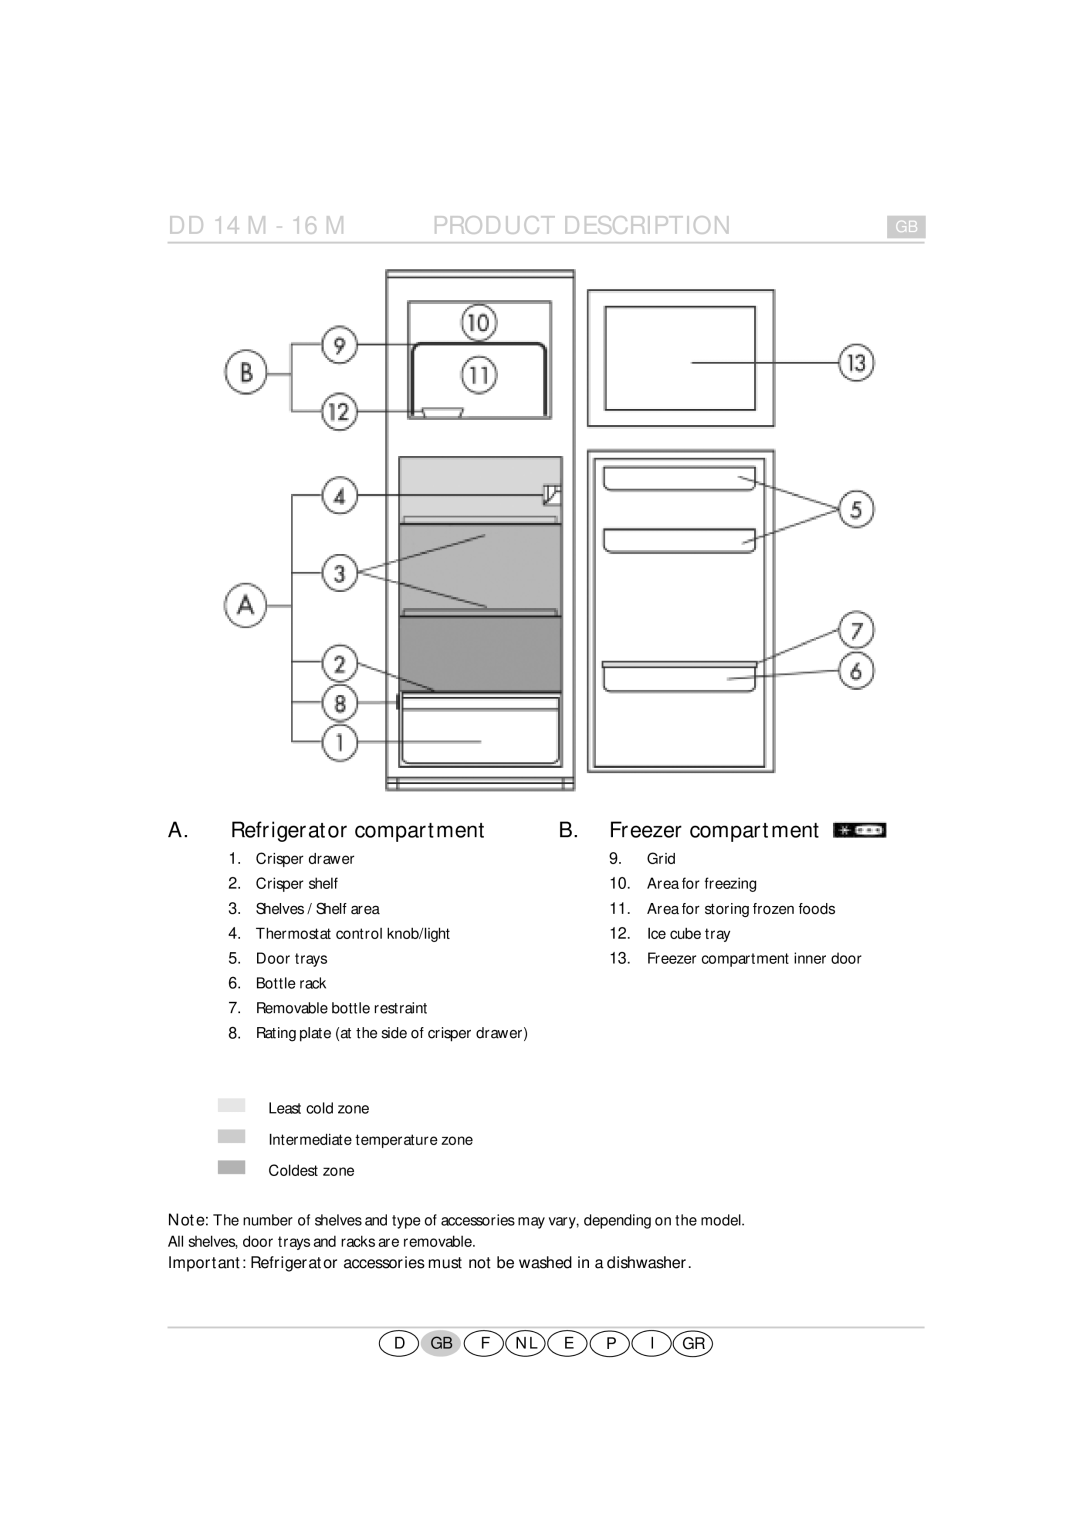 Smeg FR238APL manual Refrigerator compartment, B. Freezer compartment, DD 14 M - 16 M PRODUCT DESCRIPTION 